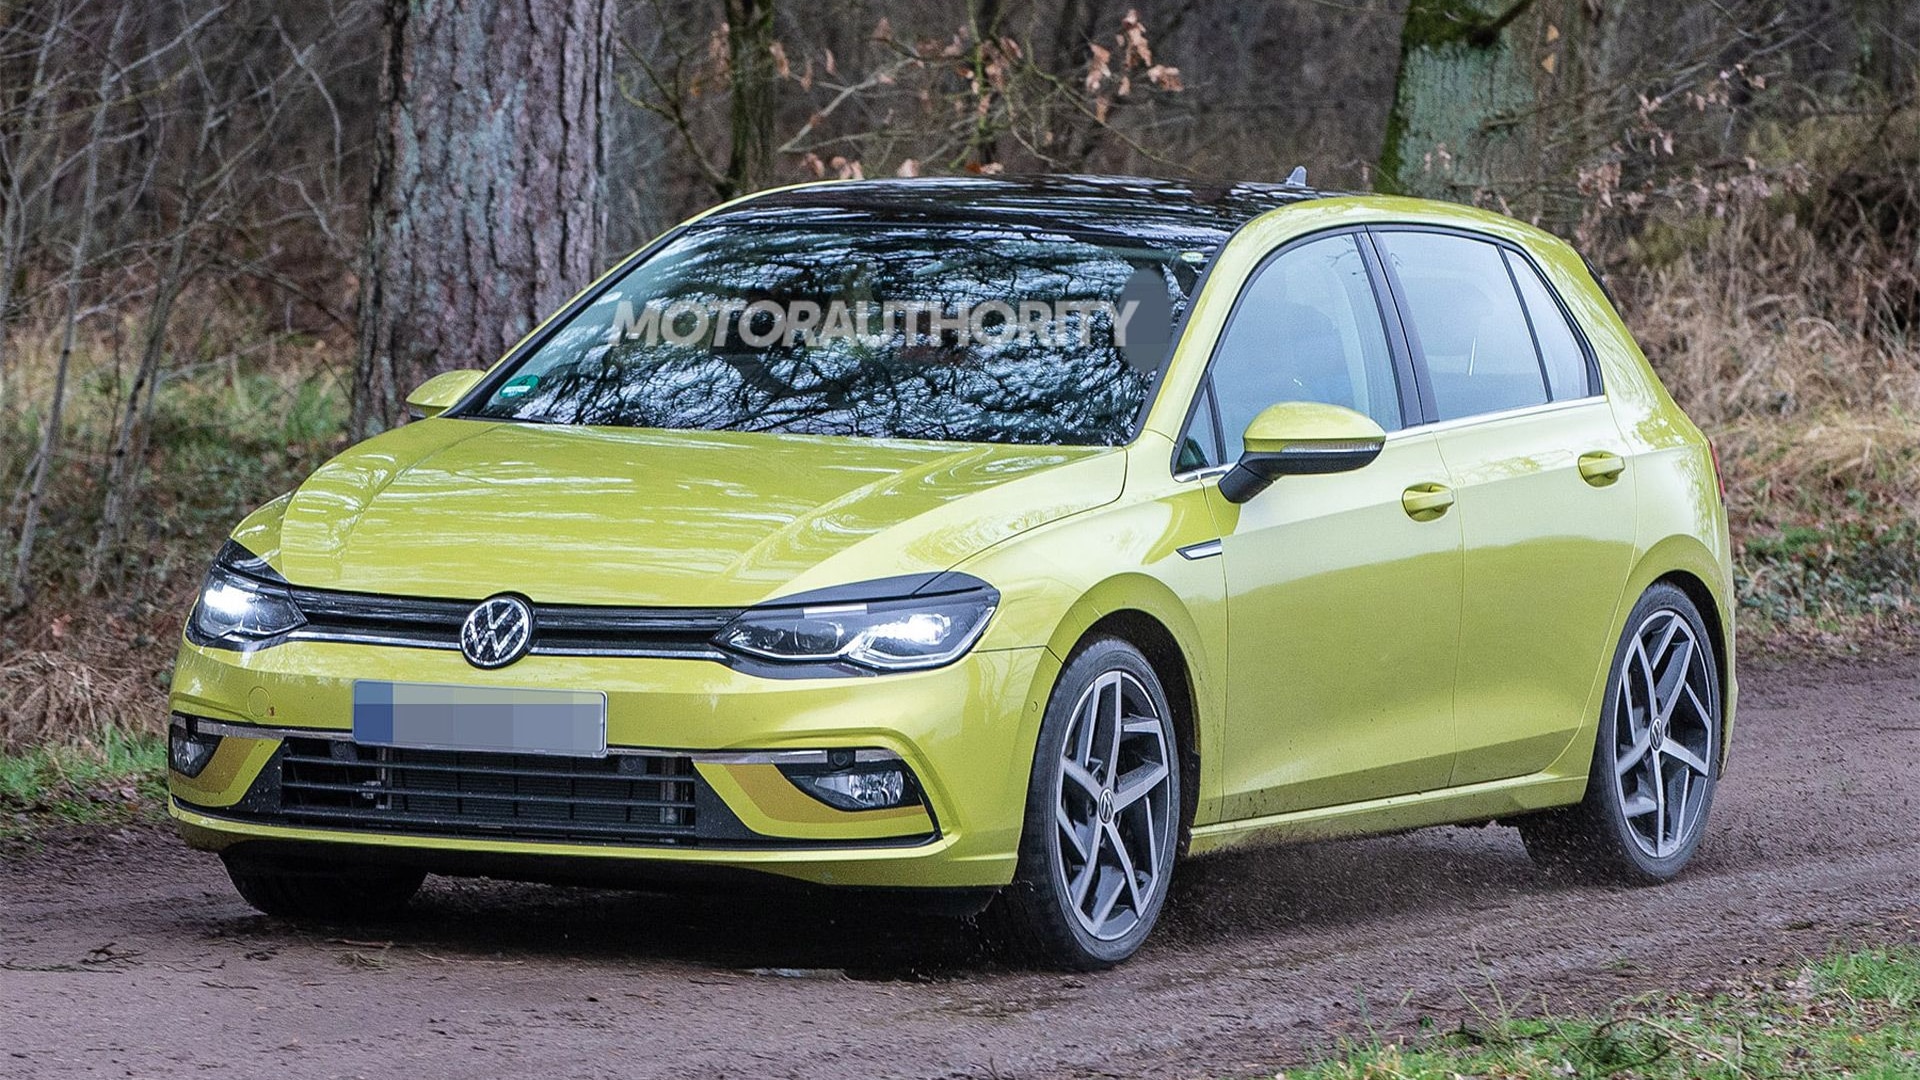 2020 Volkswagen Golf spy shots - Image via S. Baldauf/SB-Medien